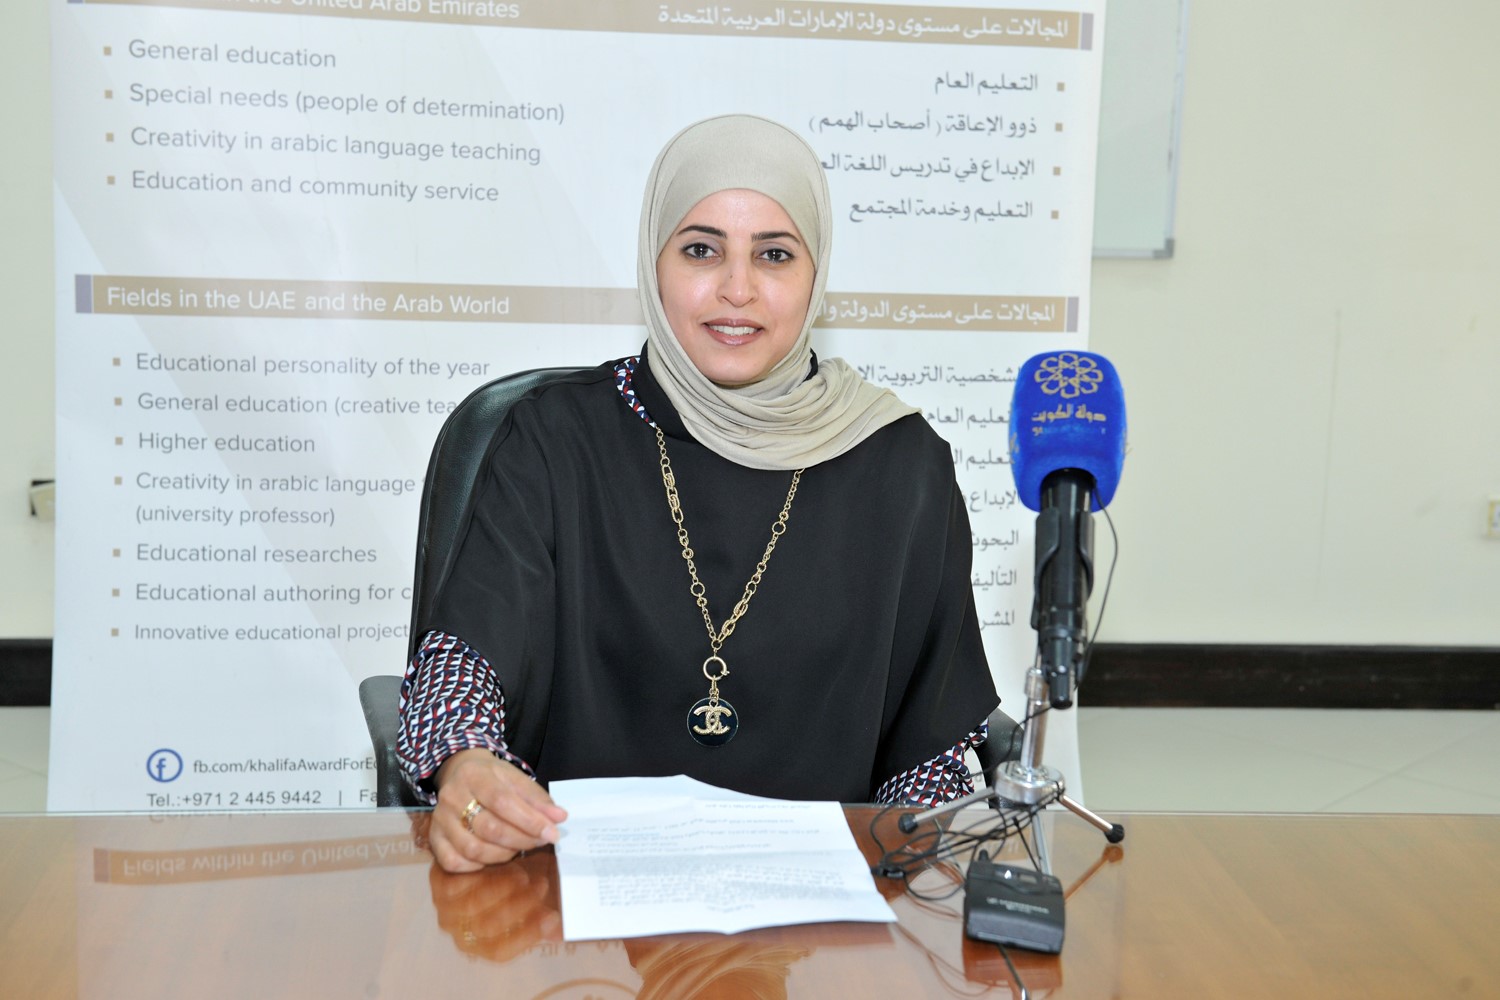 المنسق العام لجائزة جائزة خليفة التربوية في الكويت الدكتورة زهاء الصويلان خلال المؤتمر الصحفي